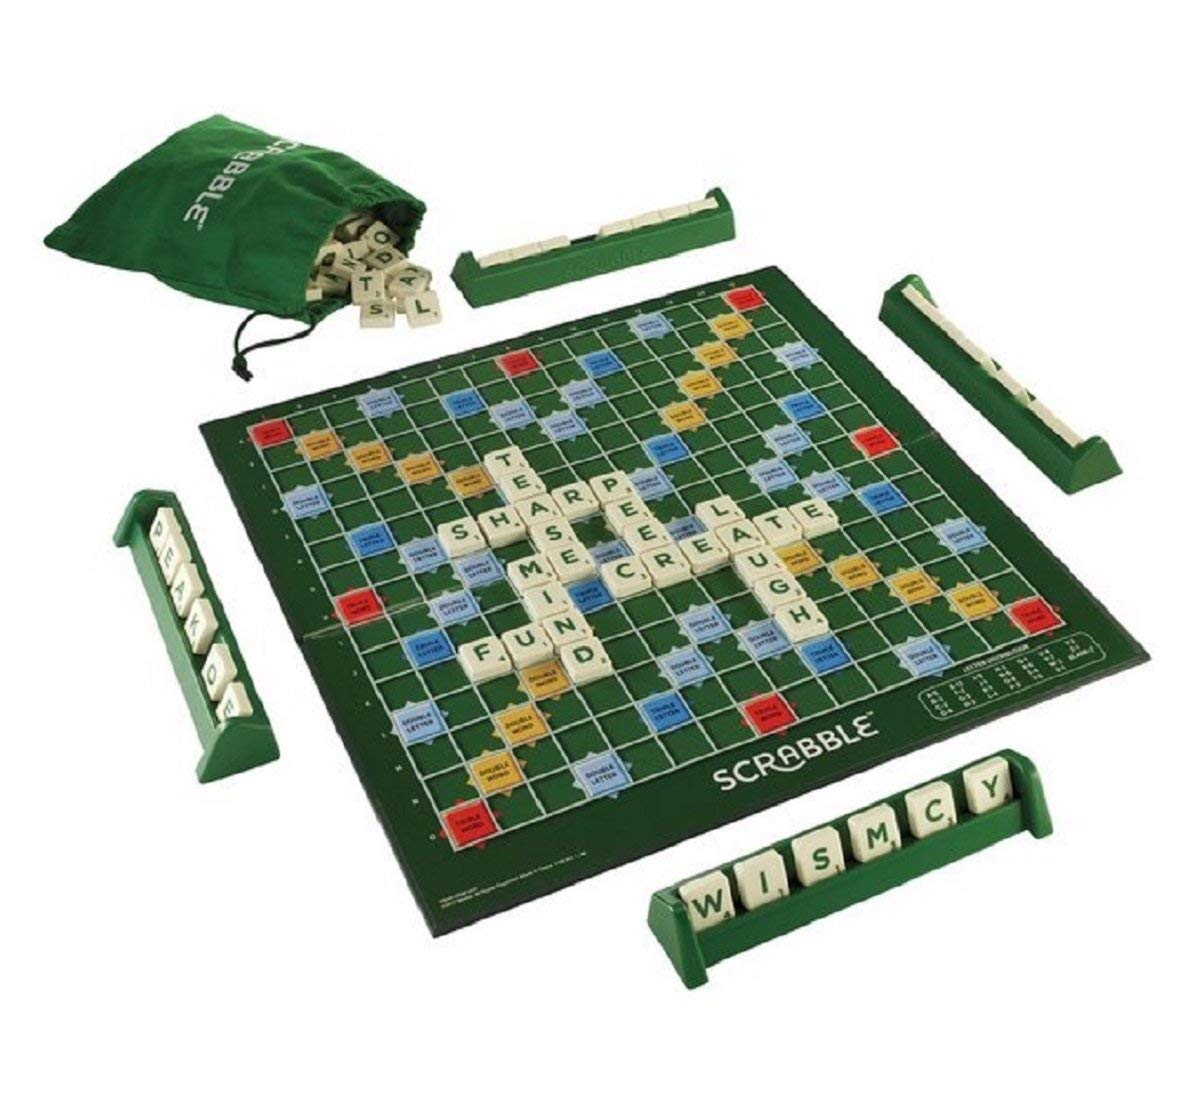 Mini Scrabble Travel Board Game.